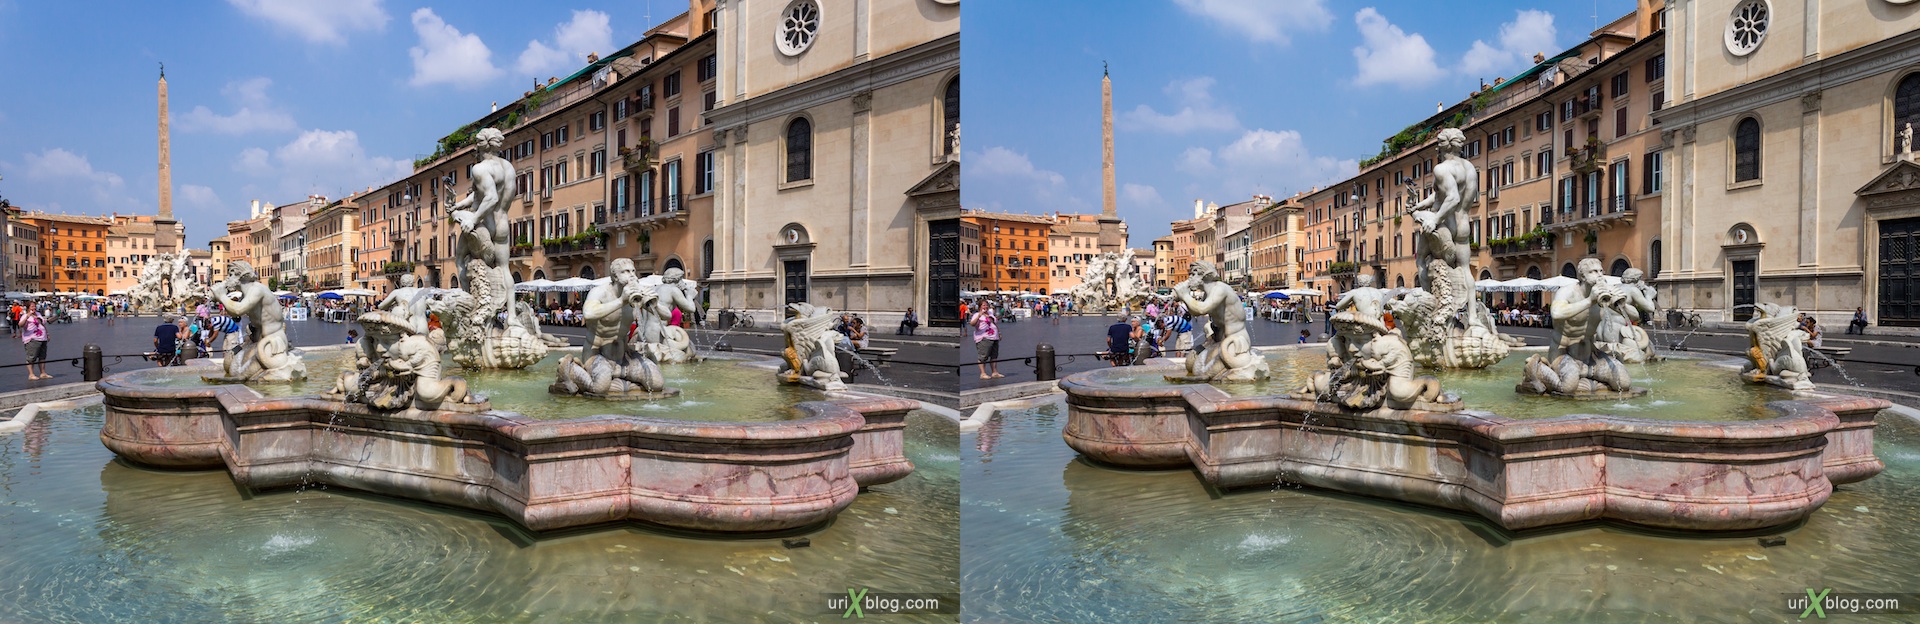 2012, фонтан Мавра на площади Навона, Рим, Италия, 3D, перекрёстные стереопары, стерео, стереопара, стереопары